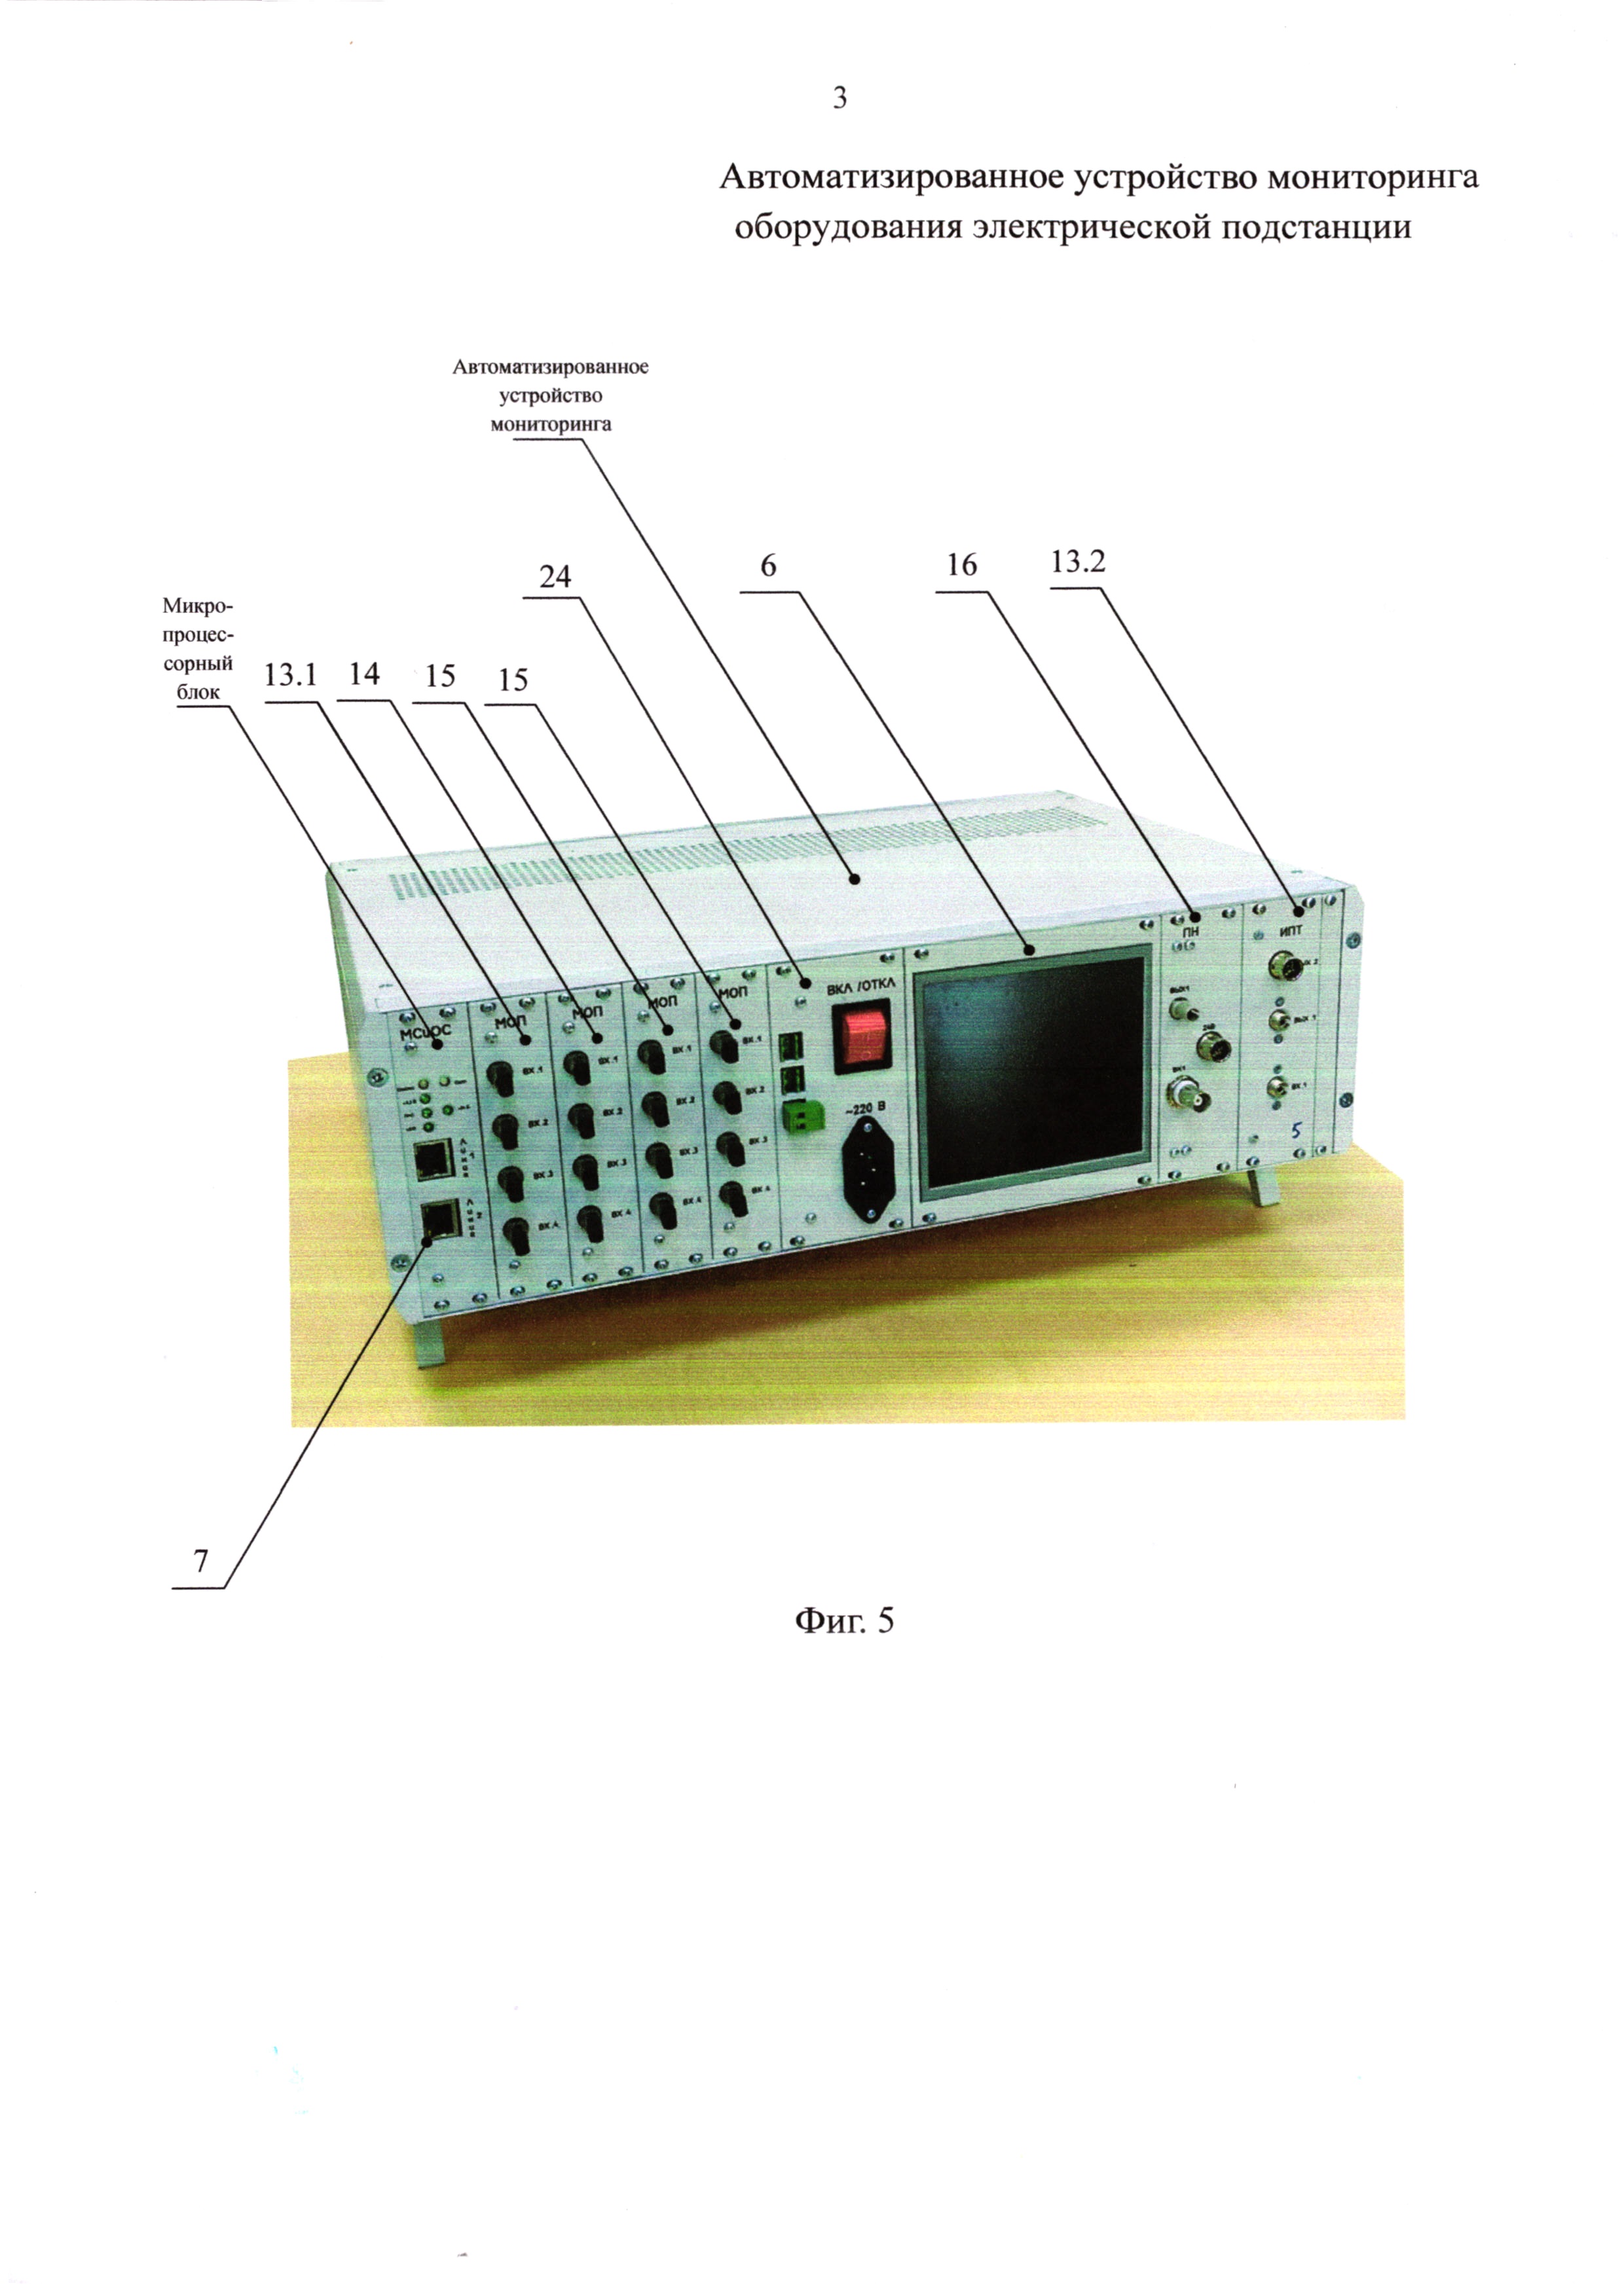 Автоматизированное устройство мониторинга оборудования электрической подстанции